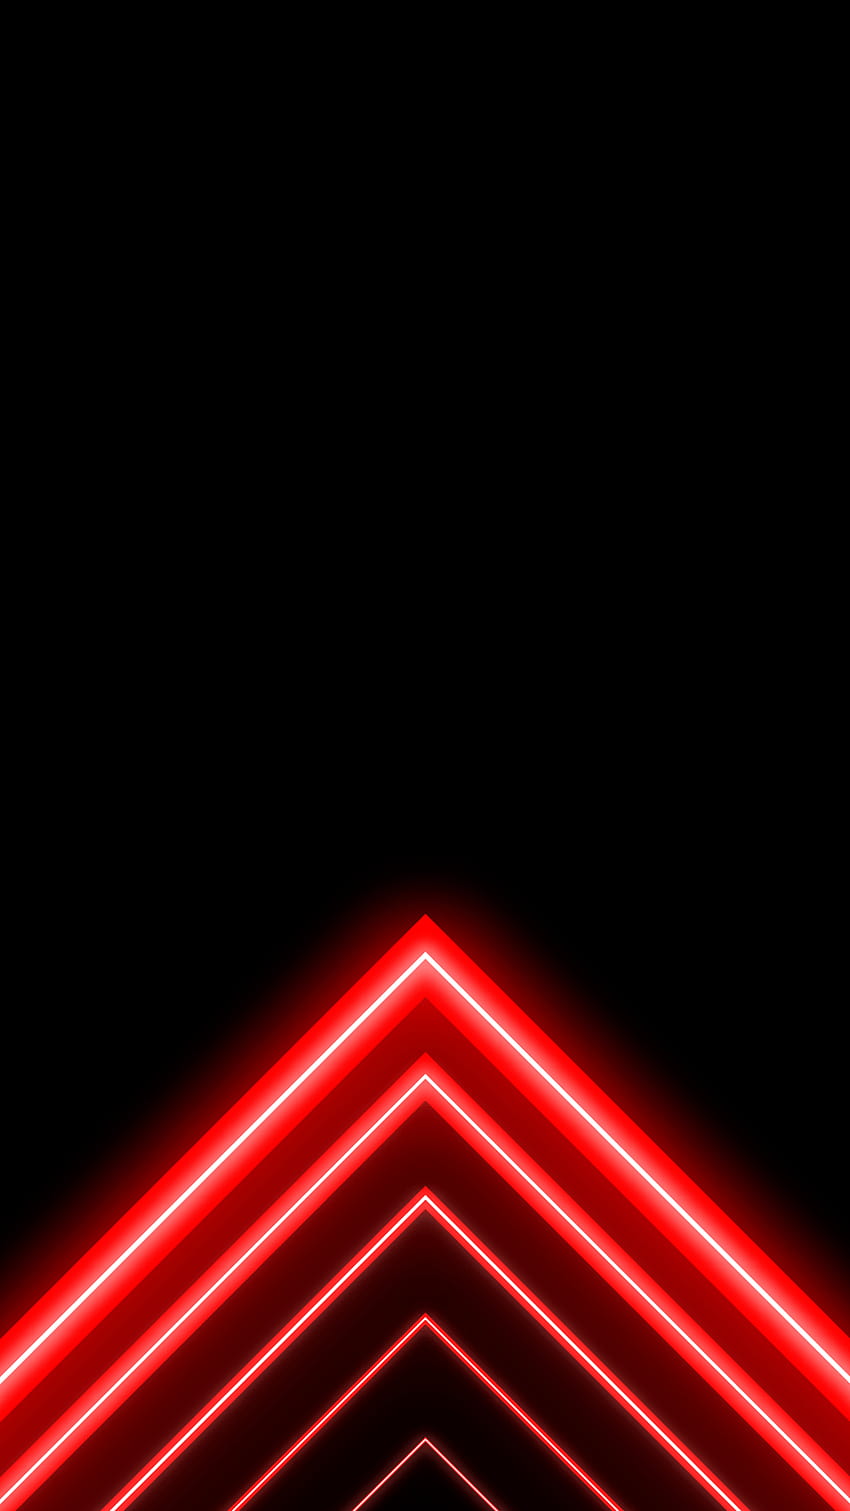 Telepon Amoled Merah dan Hitam, ponsel amoled neon wallpaper ponsel HD